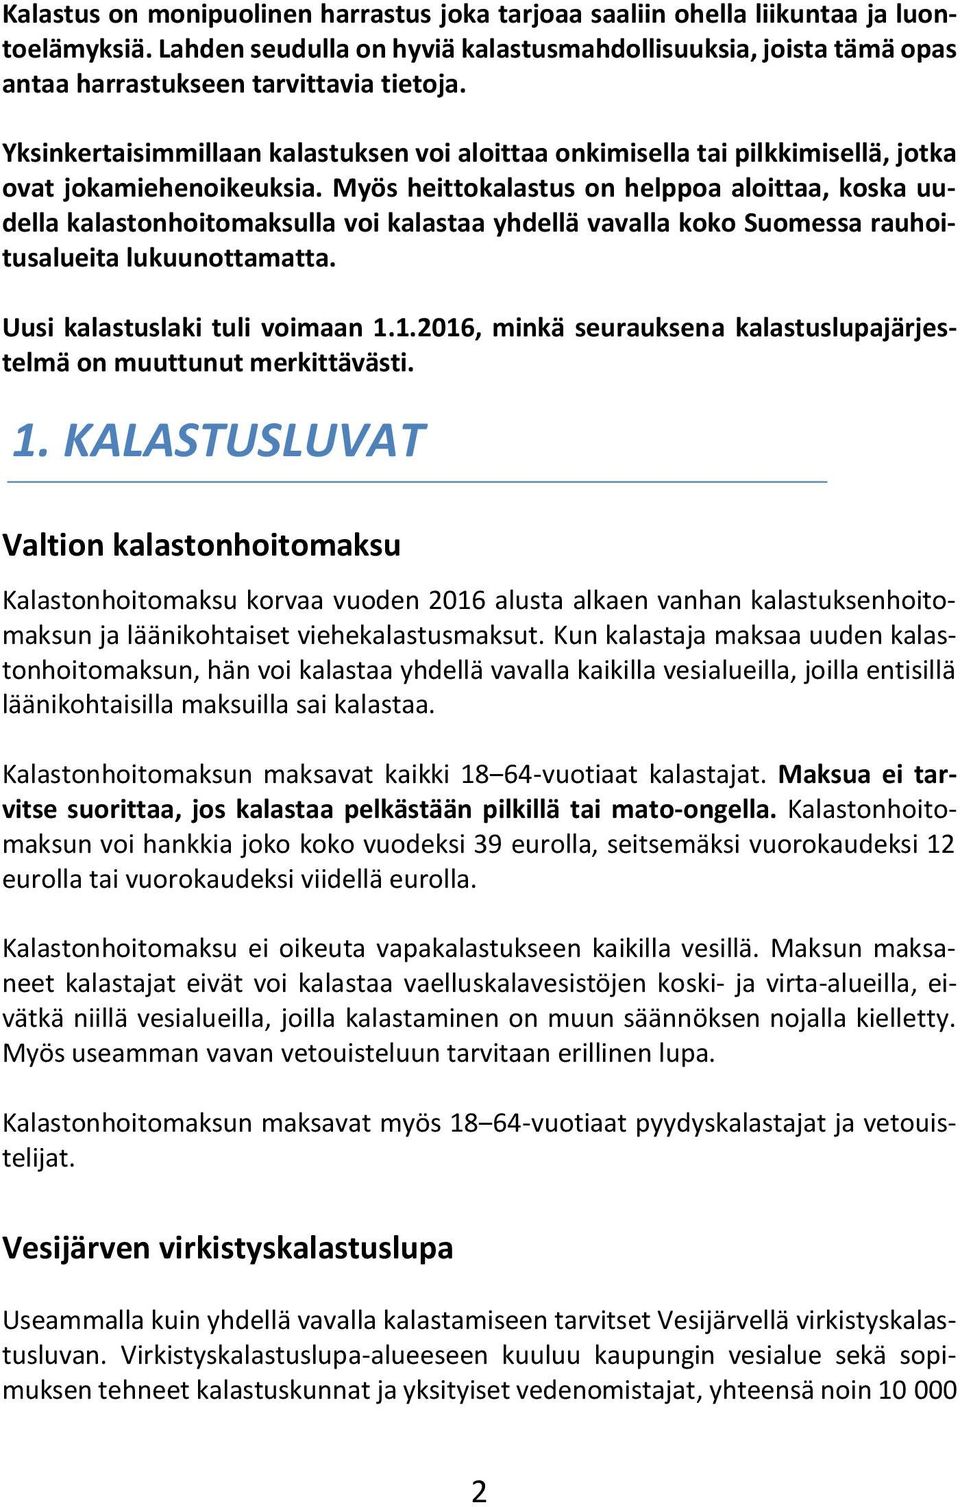 Myös heittokalastus on helppoa aloittaa, koska uudella kalastonhoitomaksulla voi kalastaa yhdellä vavalla koko Suomessa rauhoitusalueita lukuunottamatta. Uusi kalastuslaki tuli voimaan 1.